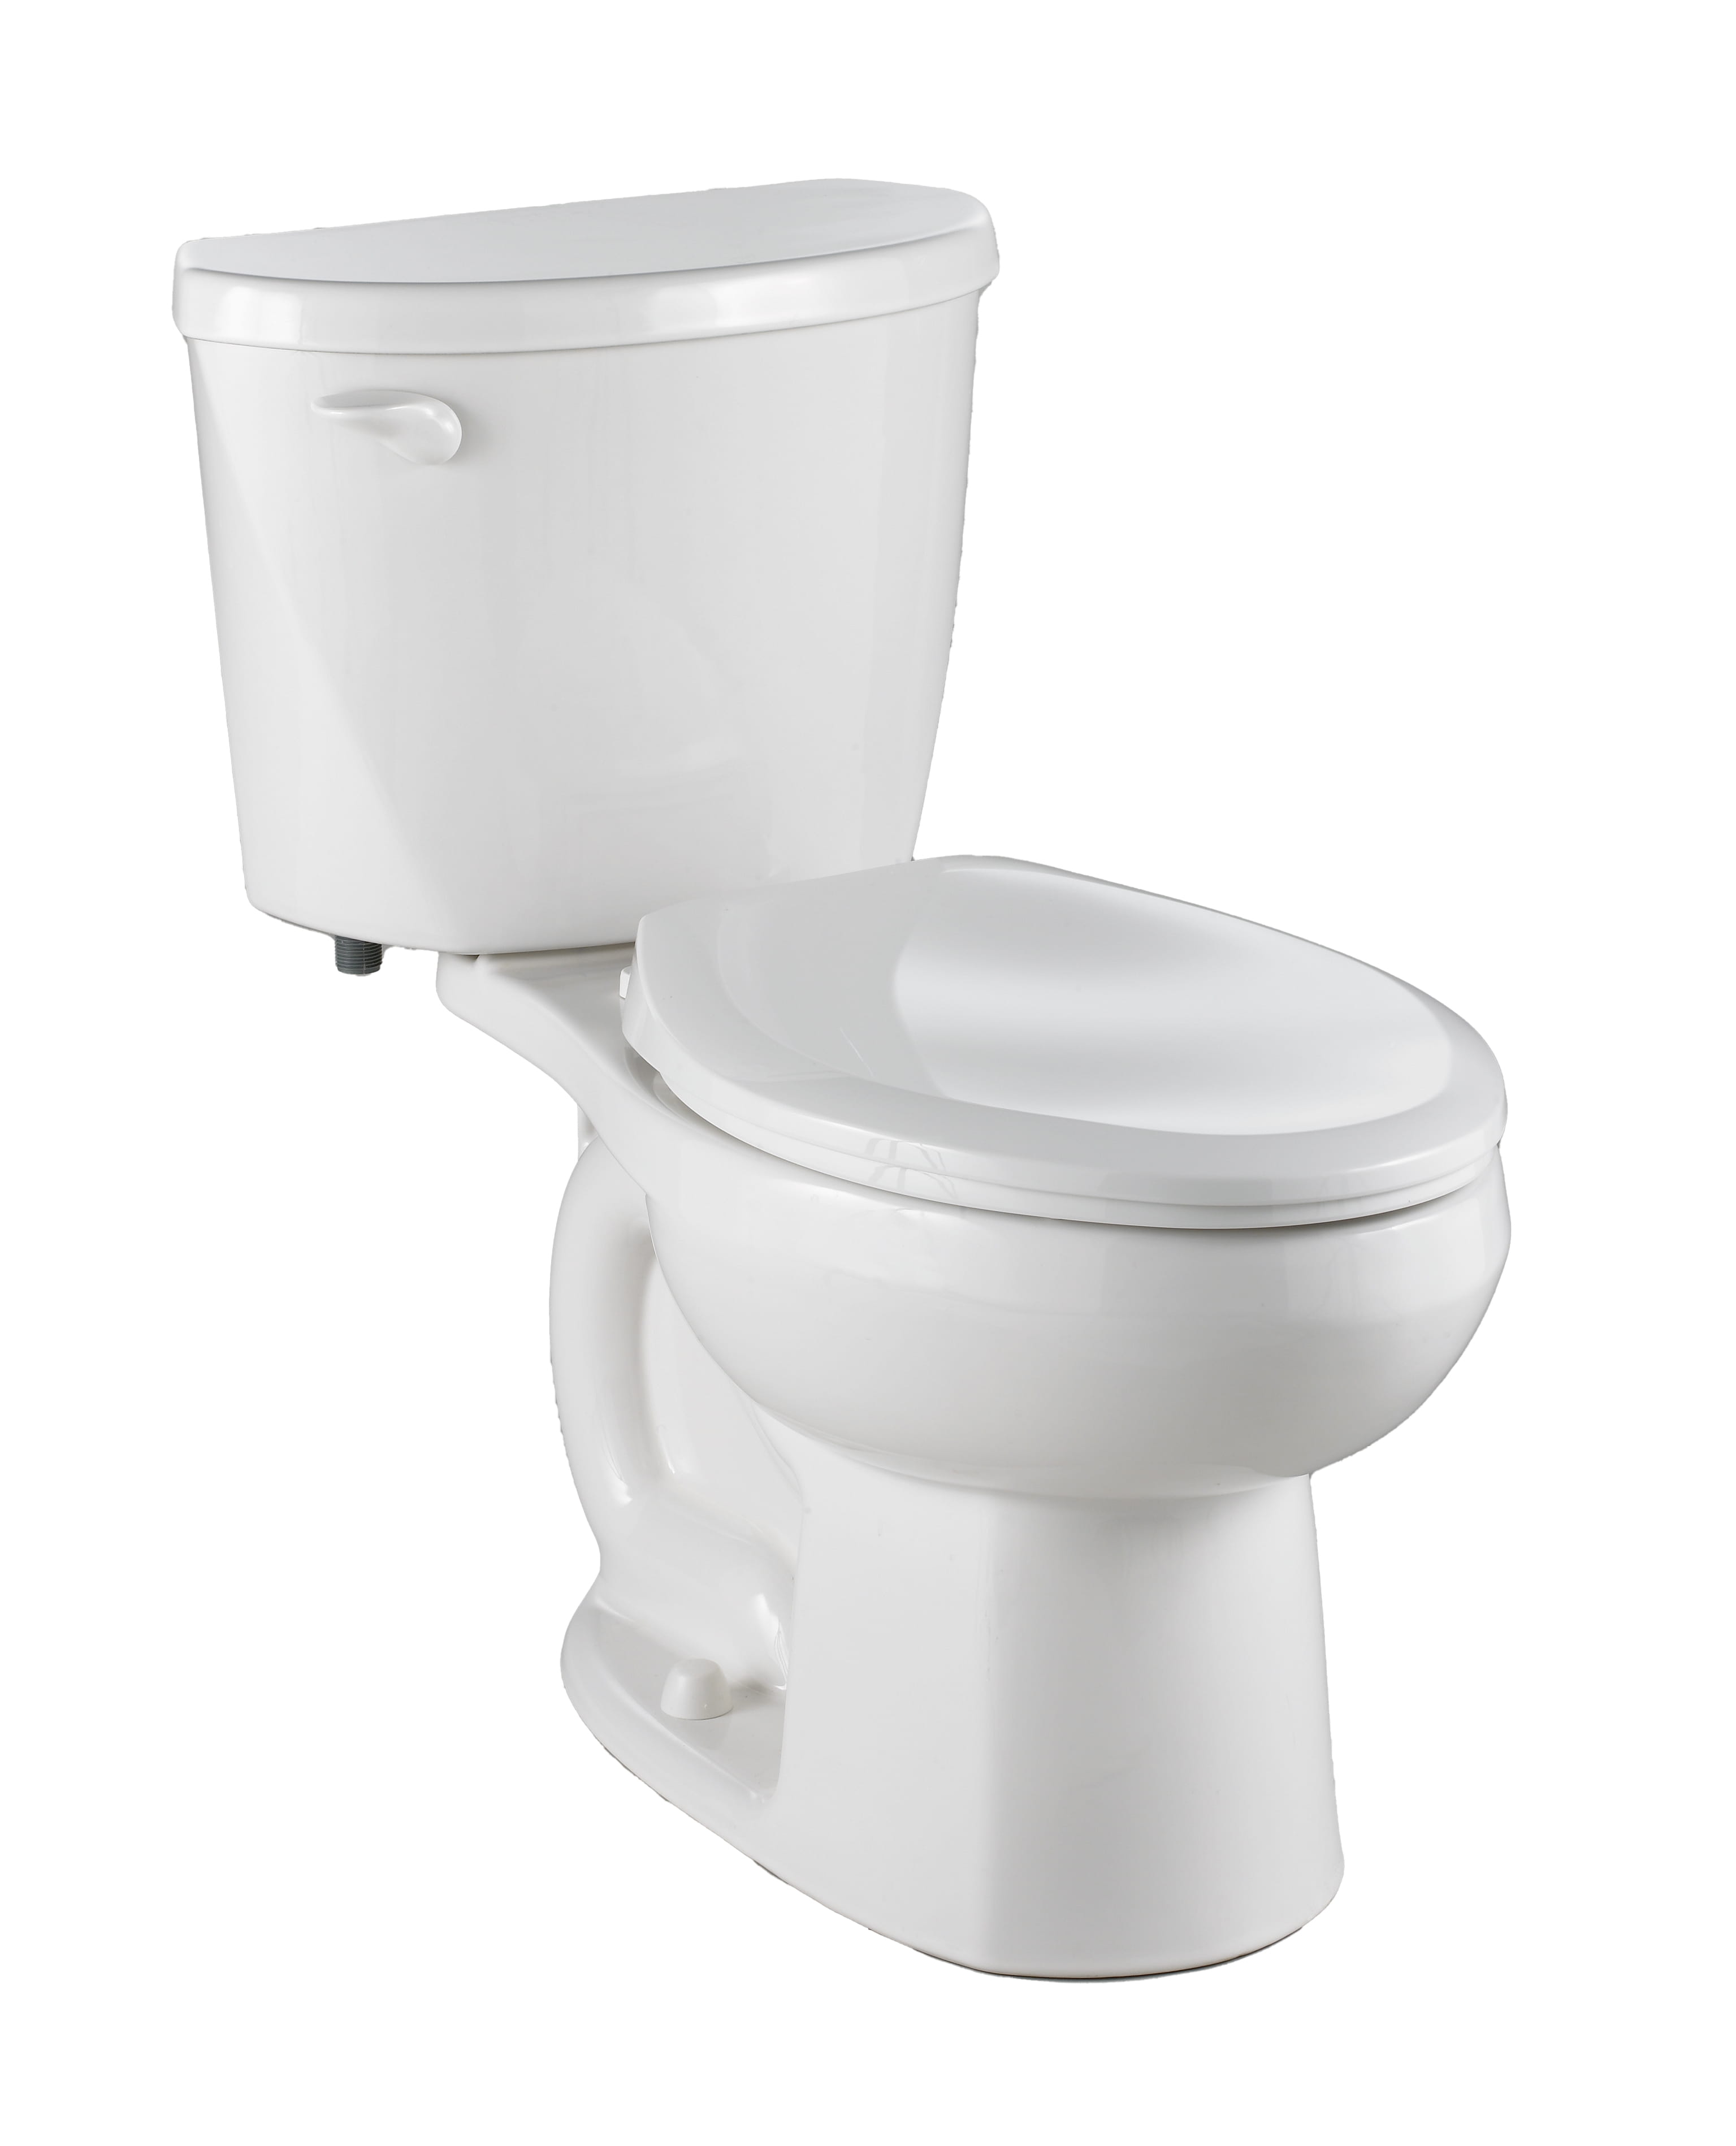 Toilette Evolution 2, 2 pièces, 1,6 gpc/6,0 lpc, à cuvette allongée à hauteur de chaise et réservoir avec doublure, sans siège